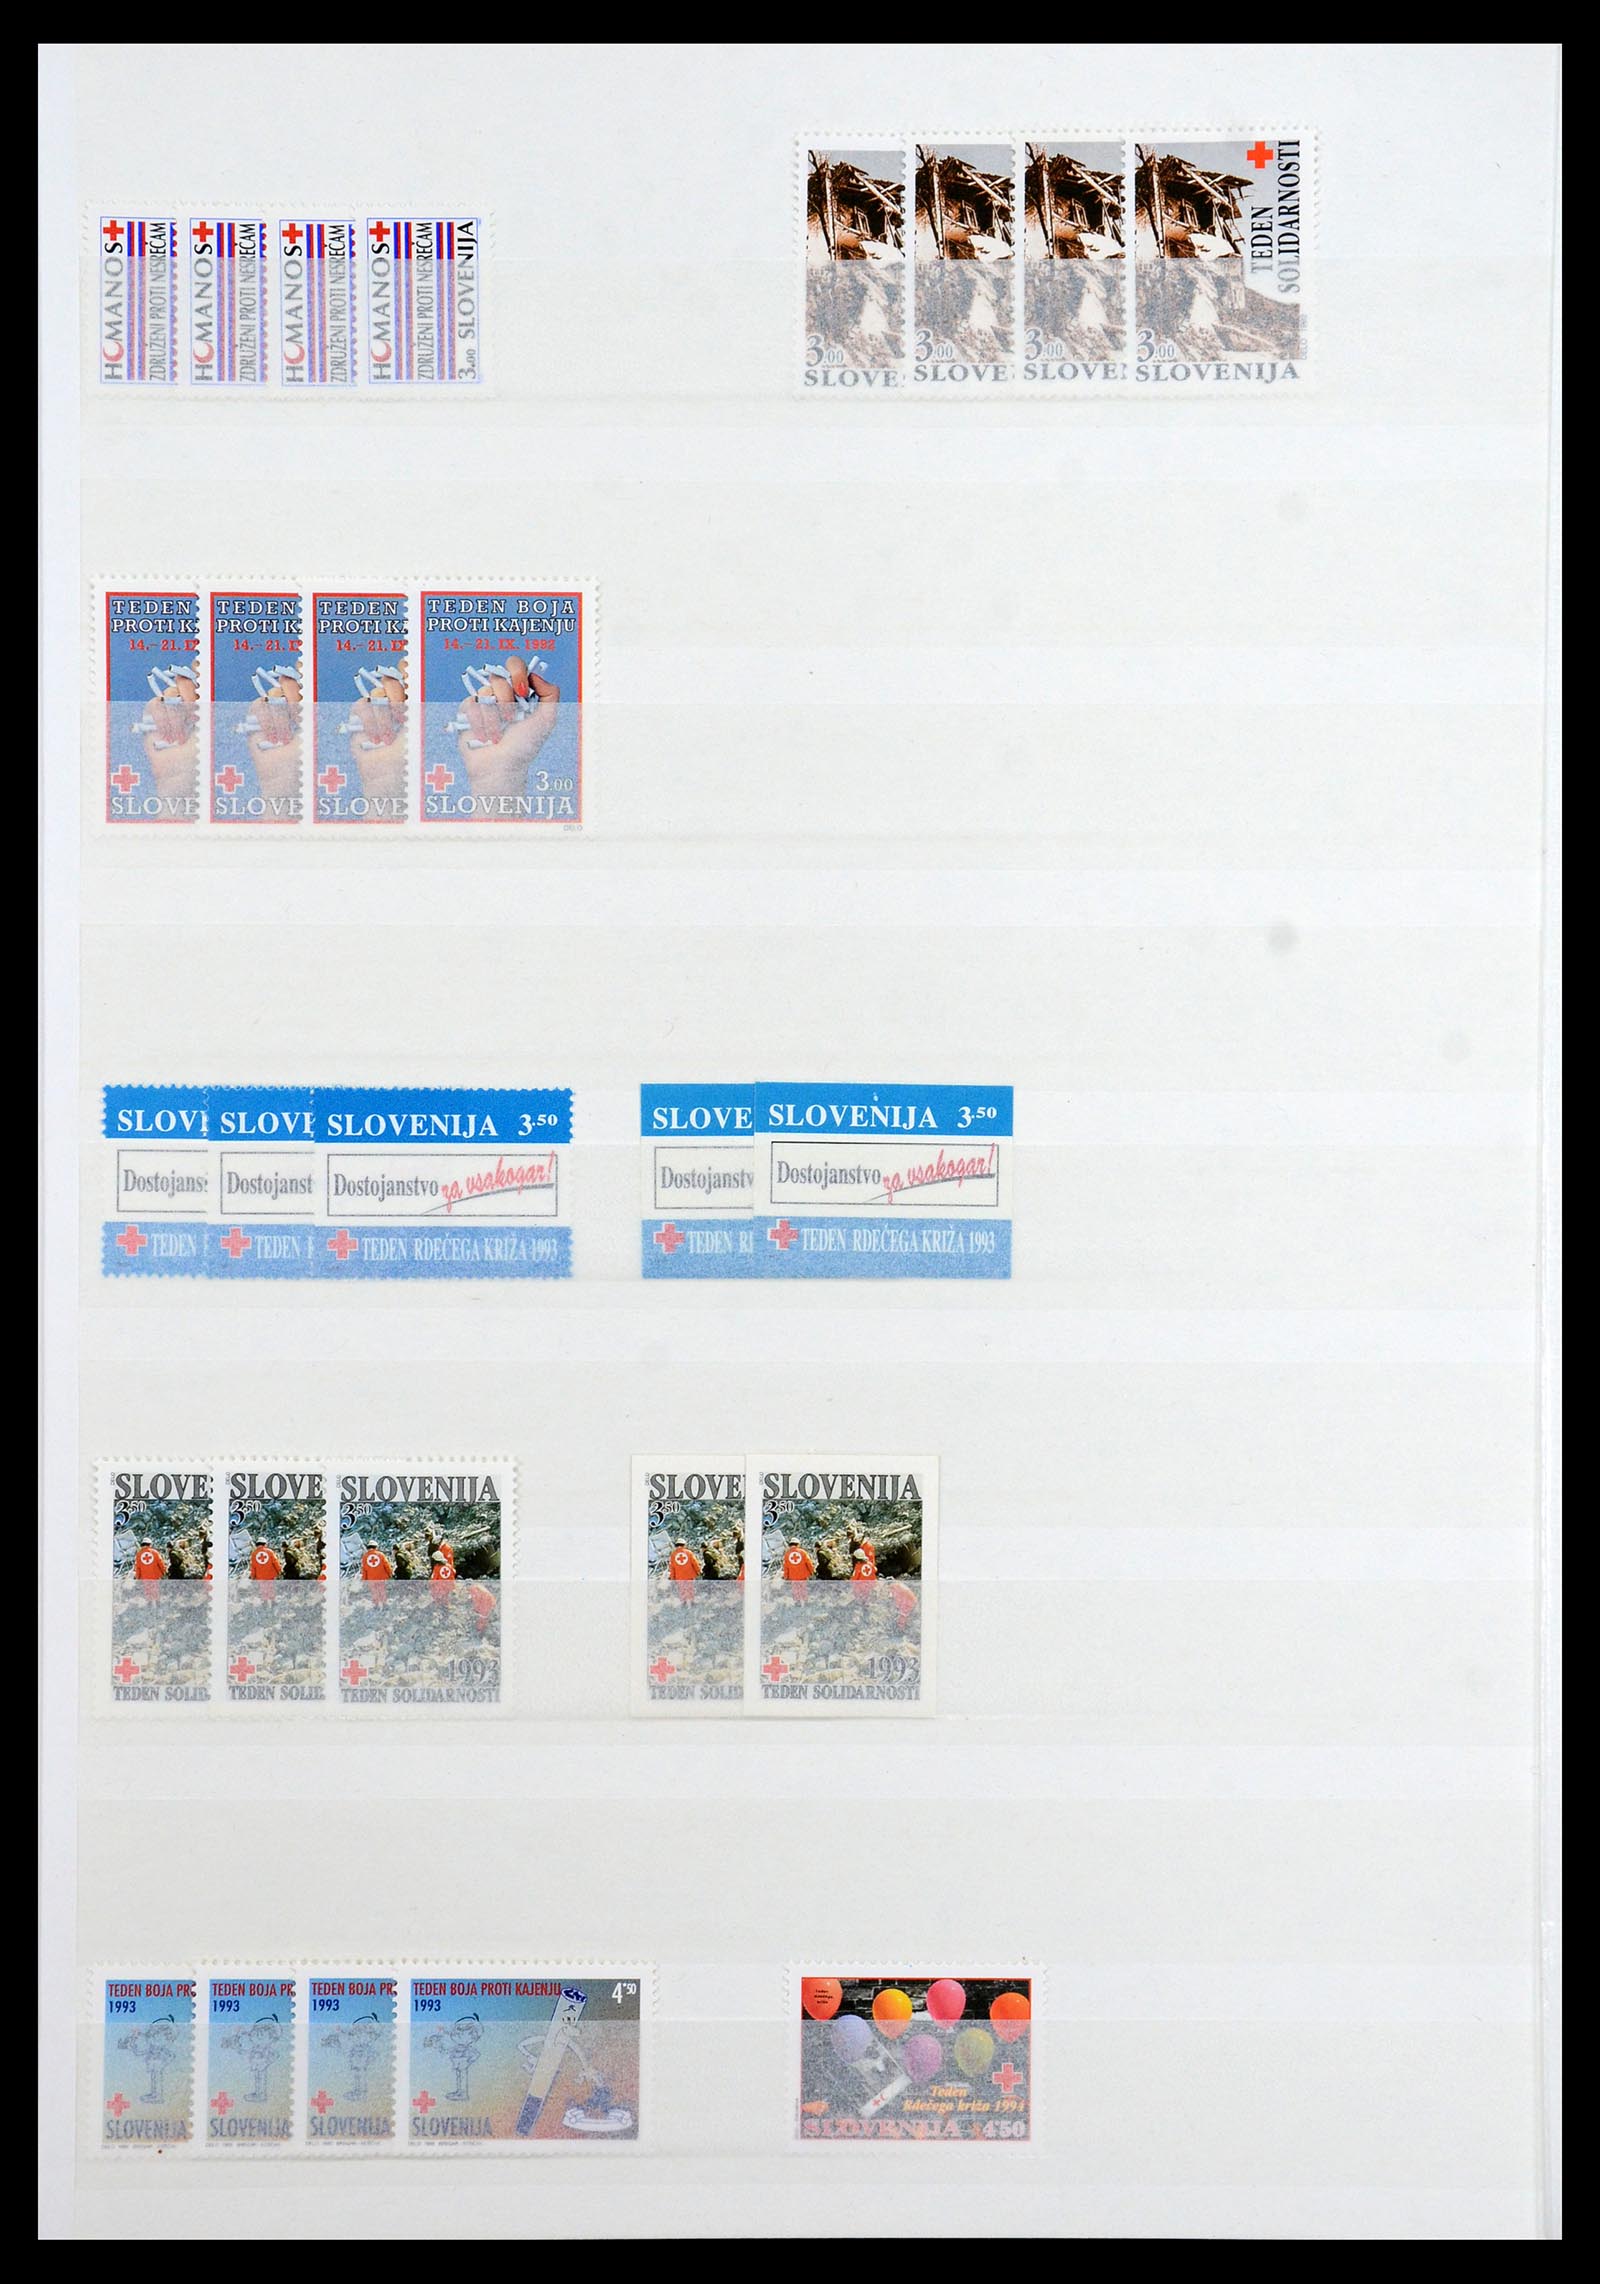 36461 020 - Stamp collection 36461 Slovenia, Croatia and Bosnia-Herzegovina MNH 1991